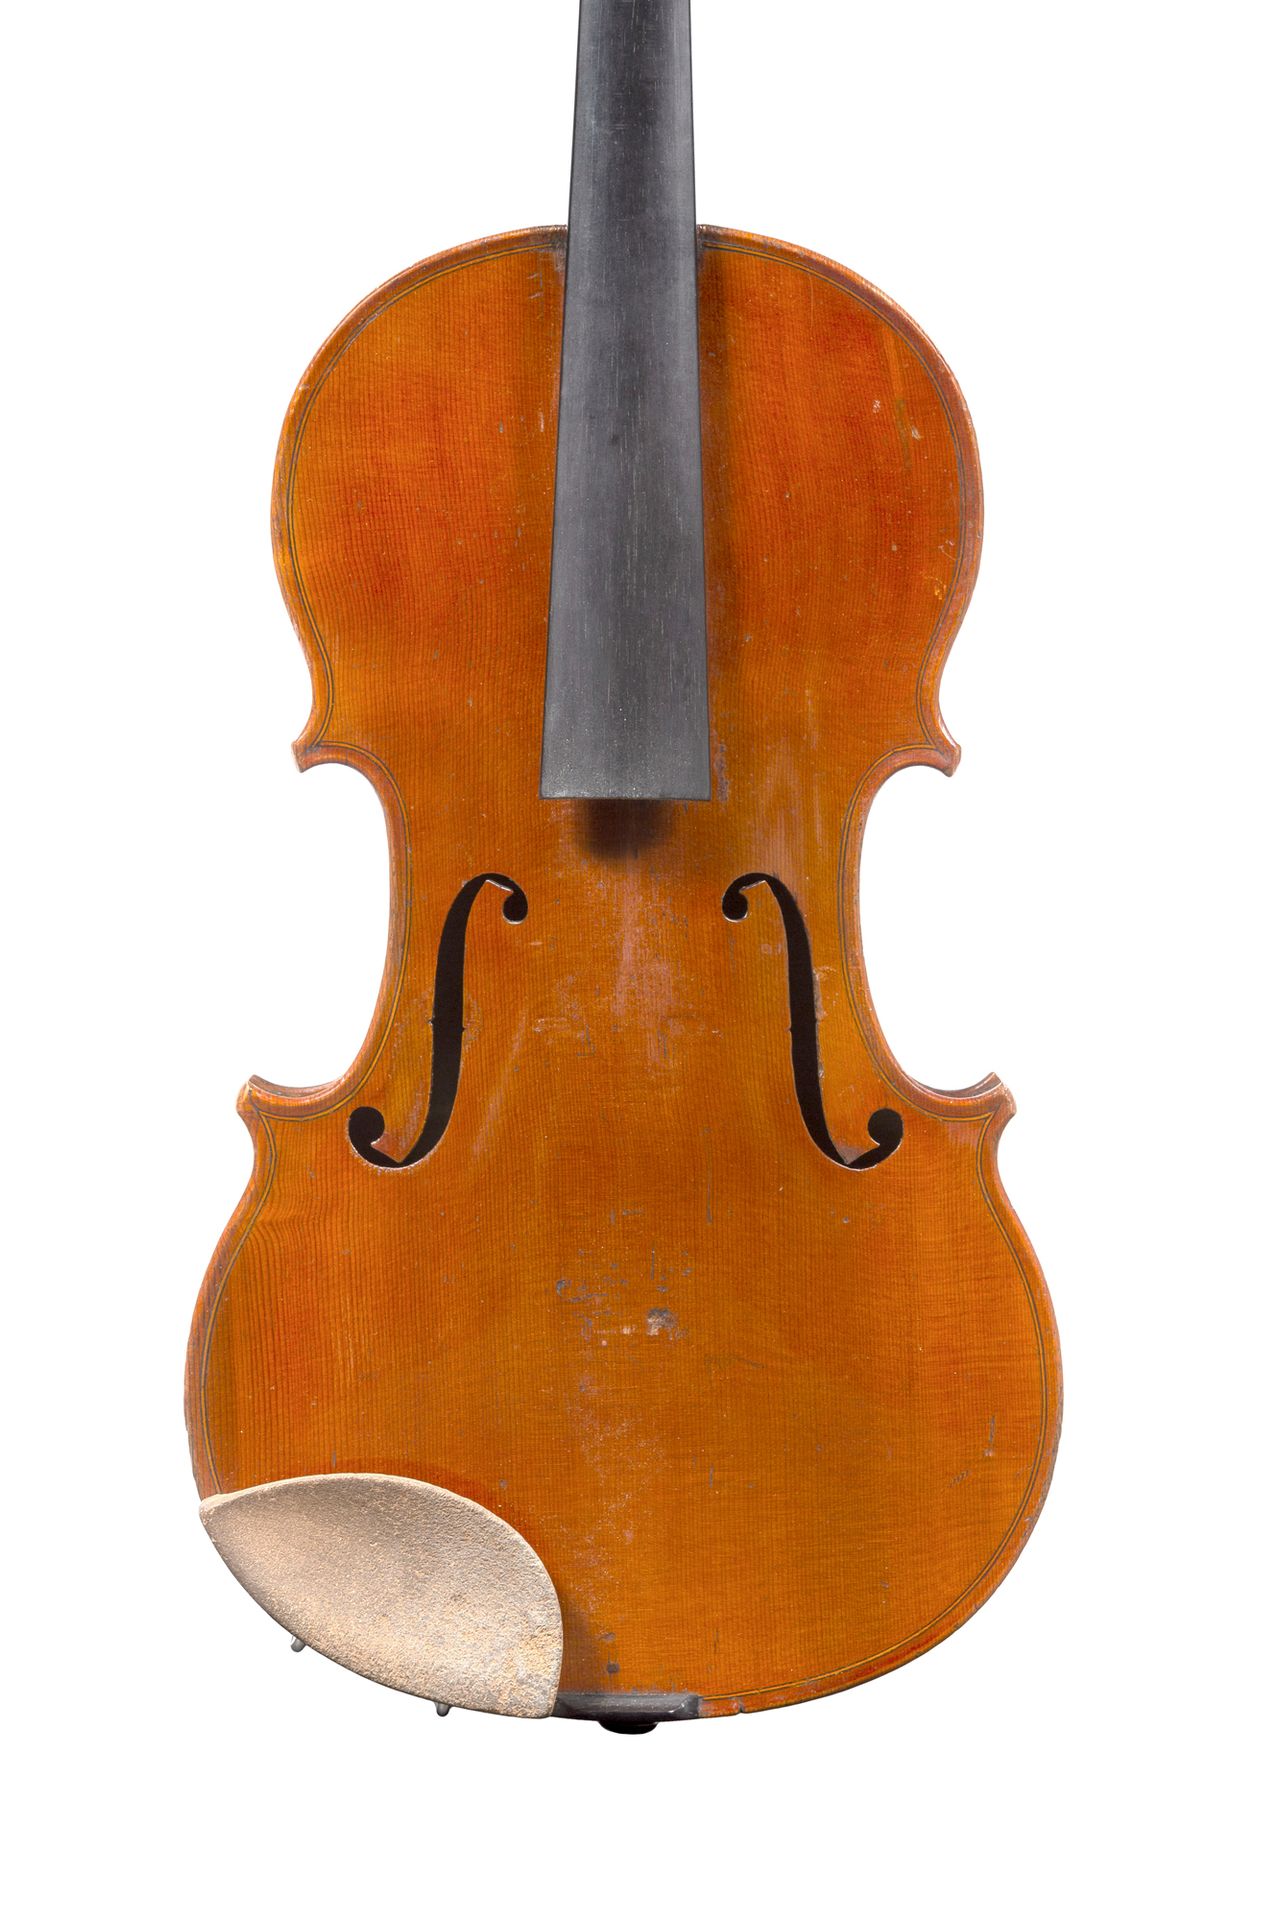 Null 约瑟夫-菲利普-穆盖尔的有趣的小提琴
1820年左右在Mirecourt制造
带有 "Mougel à Turin "的铁印
一片式面板
状况良好，如&hellip;